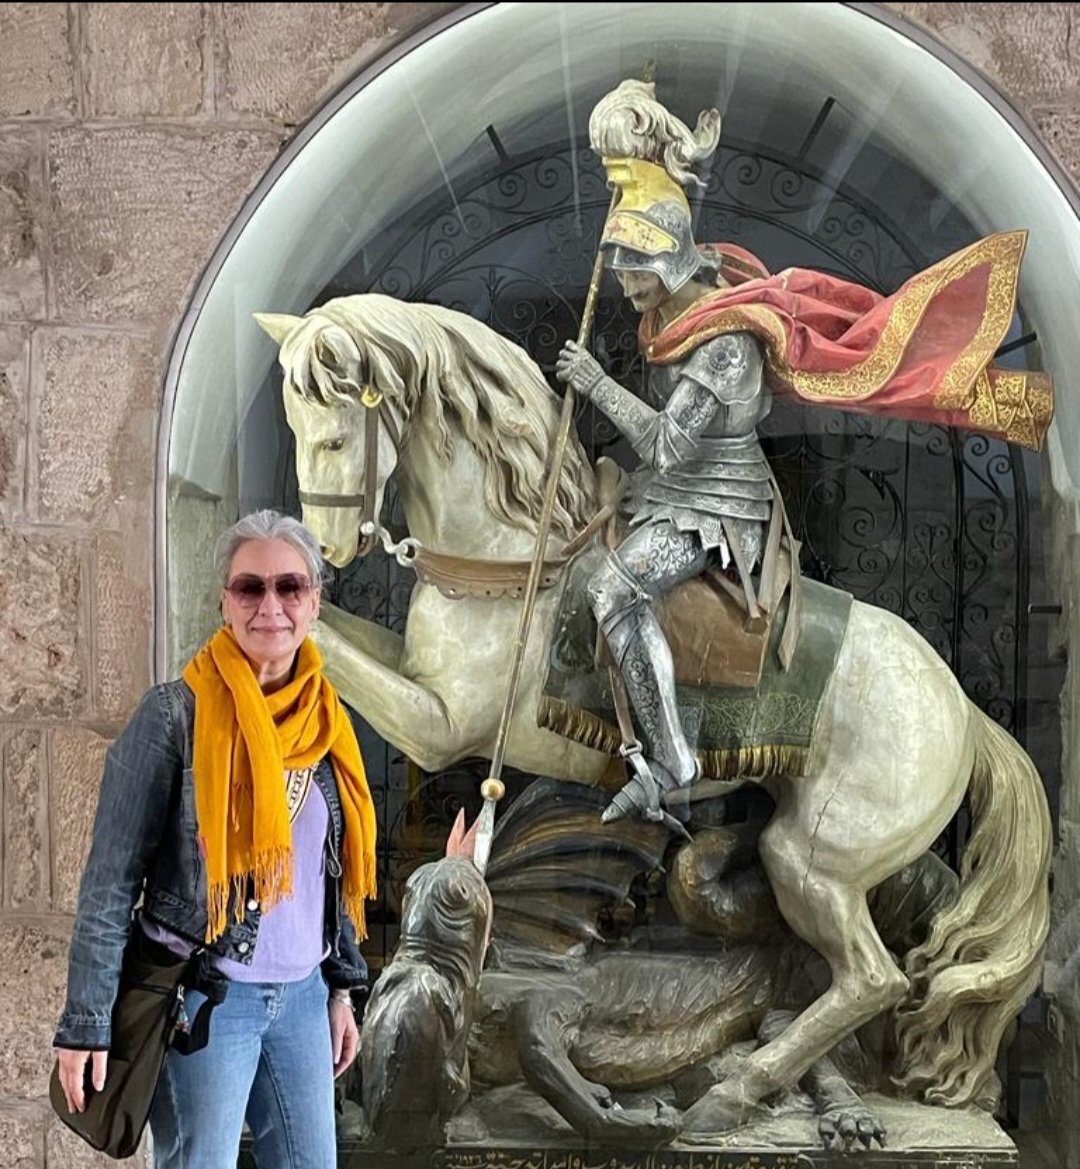 Iglesia de la Natividad en Belén. Escultura de San Jorge. Caballero a caballo, matando la serpiente - dragón
Feliz #SanJorge 
Feliz #DíaDeAragón 
Feliz #DiaDelLibro

#Aragón